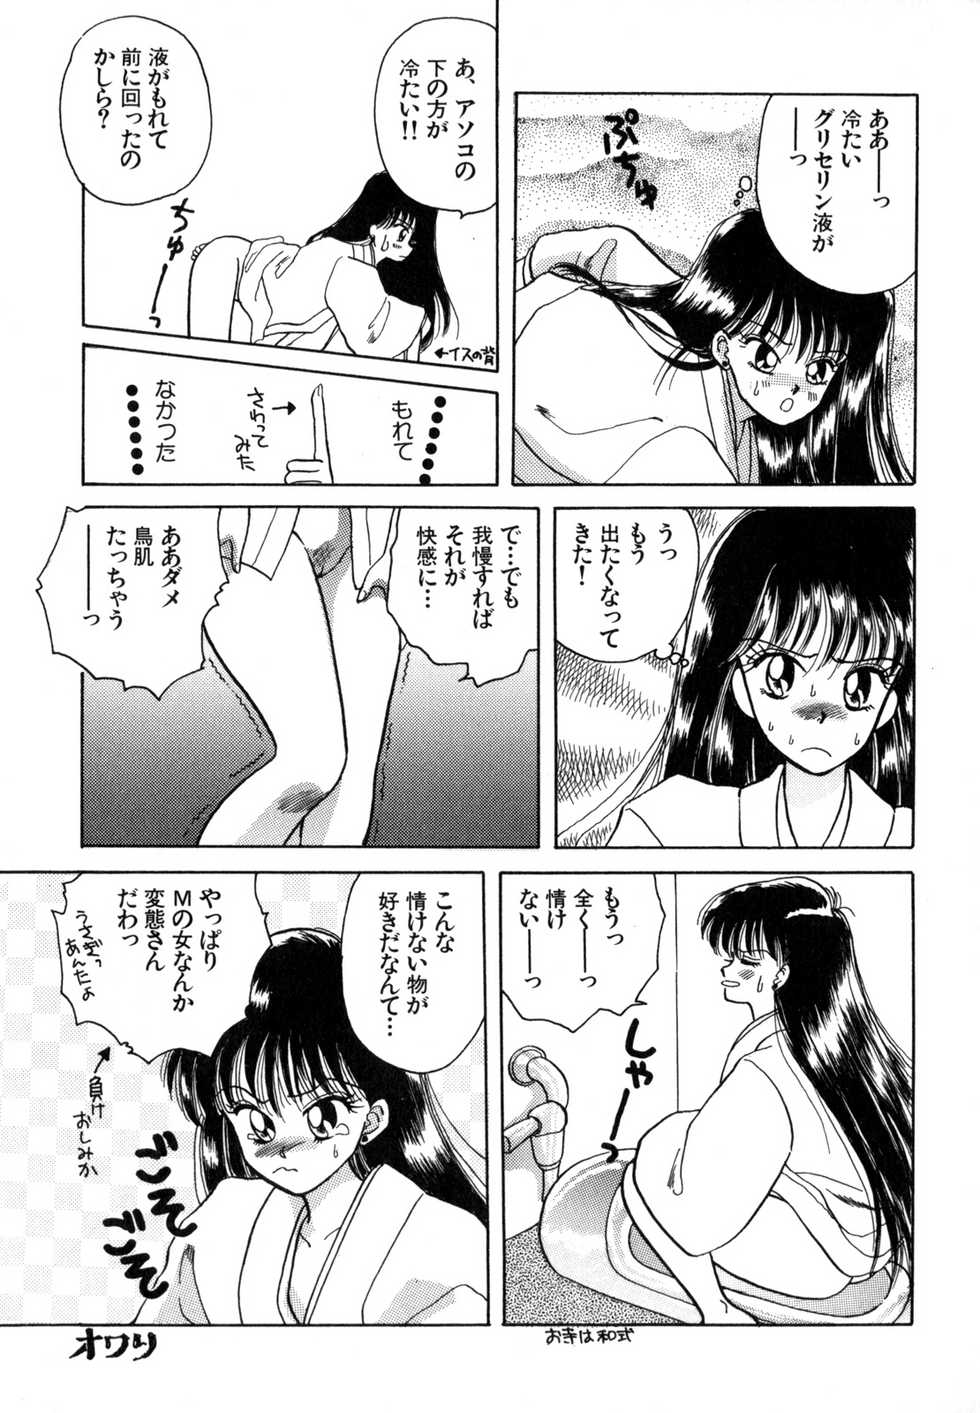 [Anthology] Lunatic Party 4 (Bishoujo Senshi Sailor Moon) - Page 18